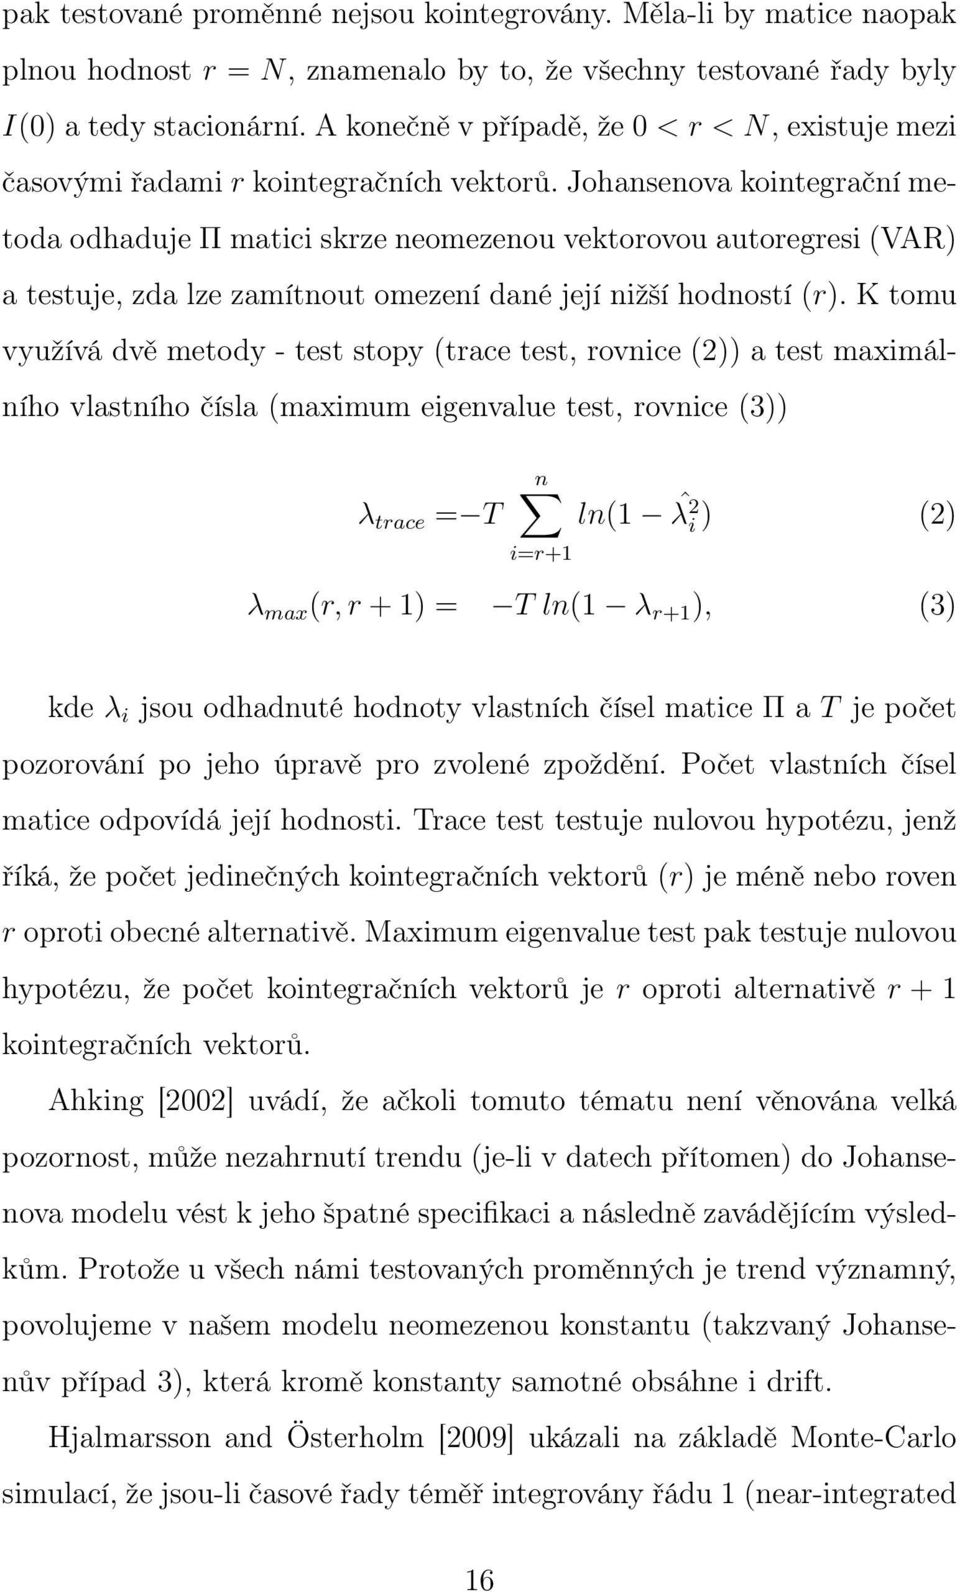 Johansenova kointegrační metoda odhaduje Π matici skrze neomezenou vektorovou autoregresi (VAR) a testuje, zda lze zamítnout omezení dané její nižší hodností (r).